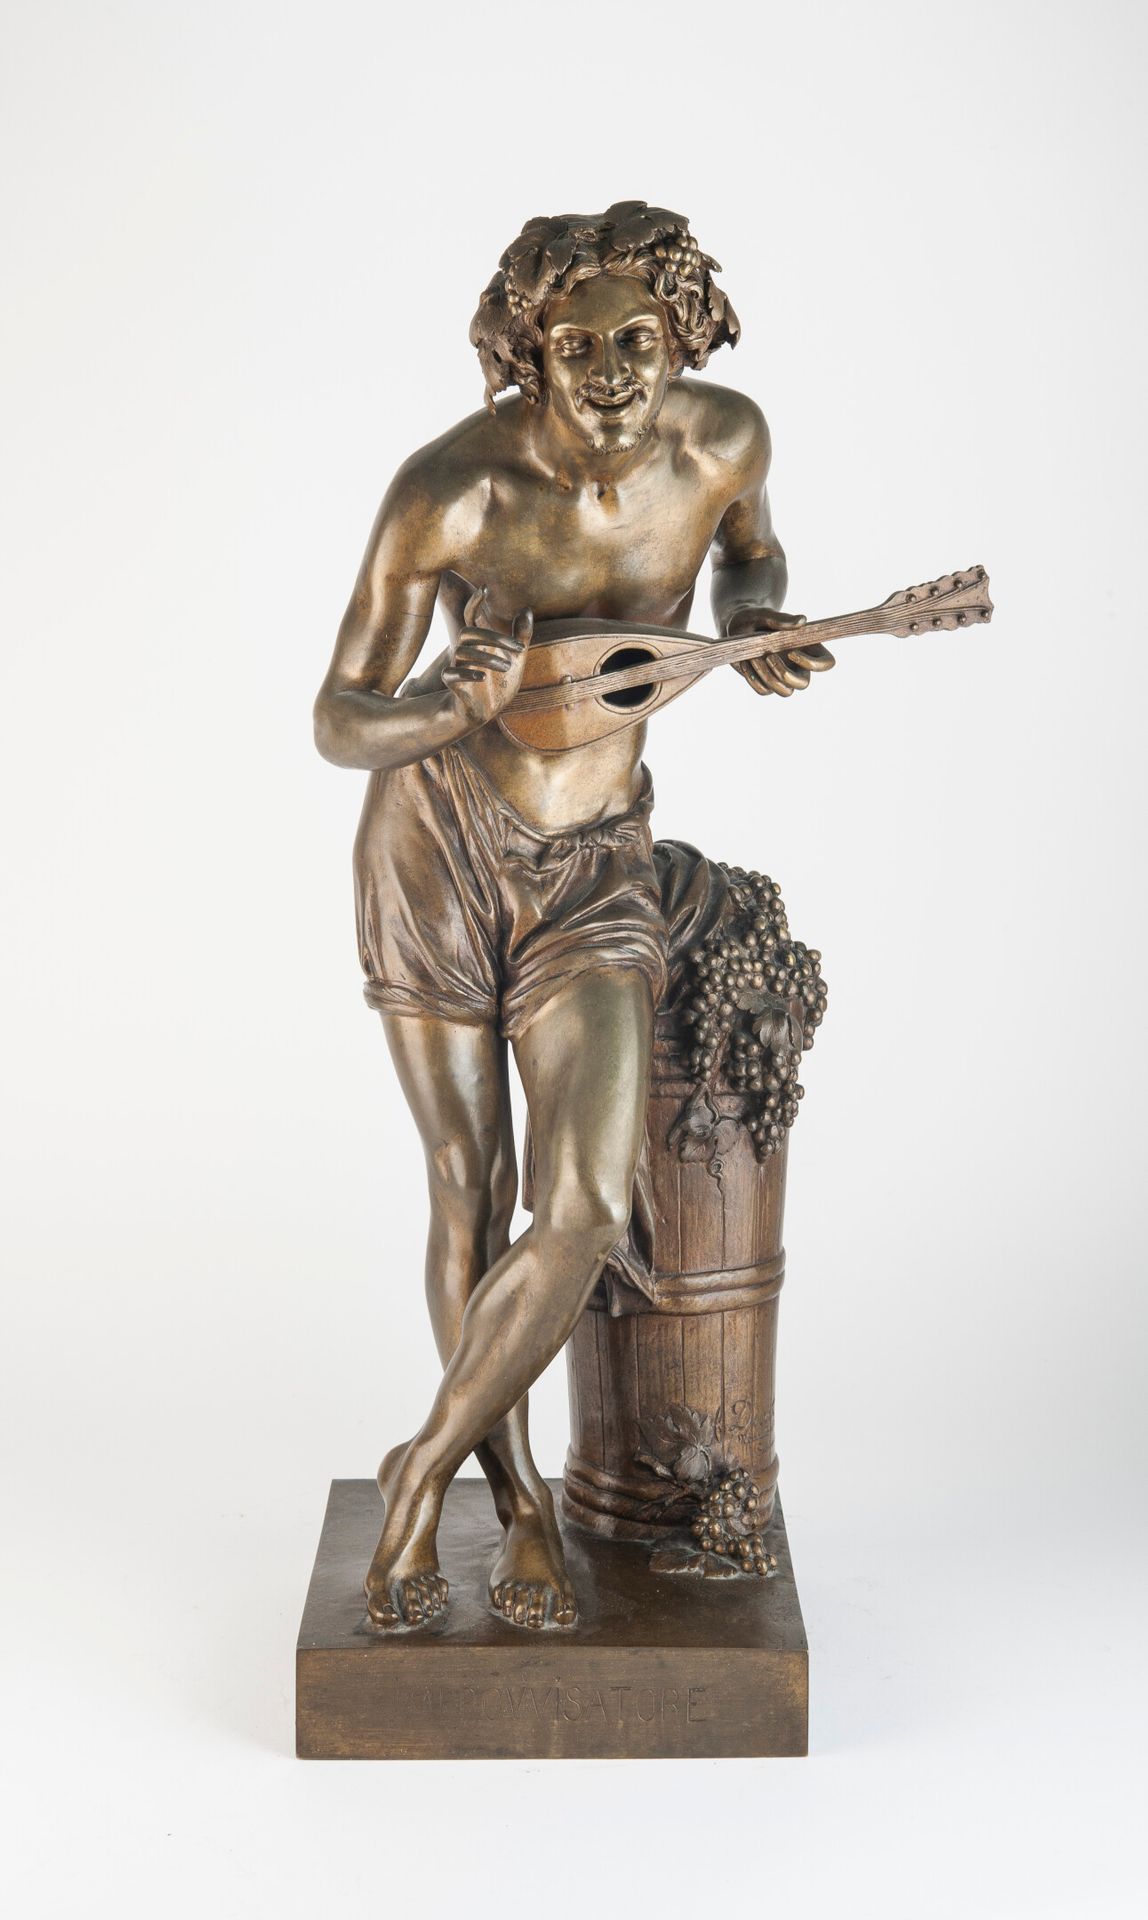 D'après Francisque Joseph DURET (1804-1865) "Improvisatore".
Bronzeabguss mit nu&hellip;